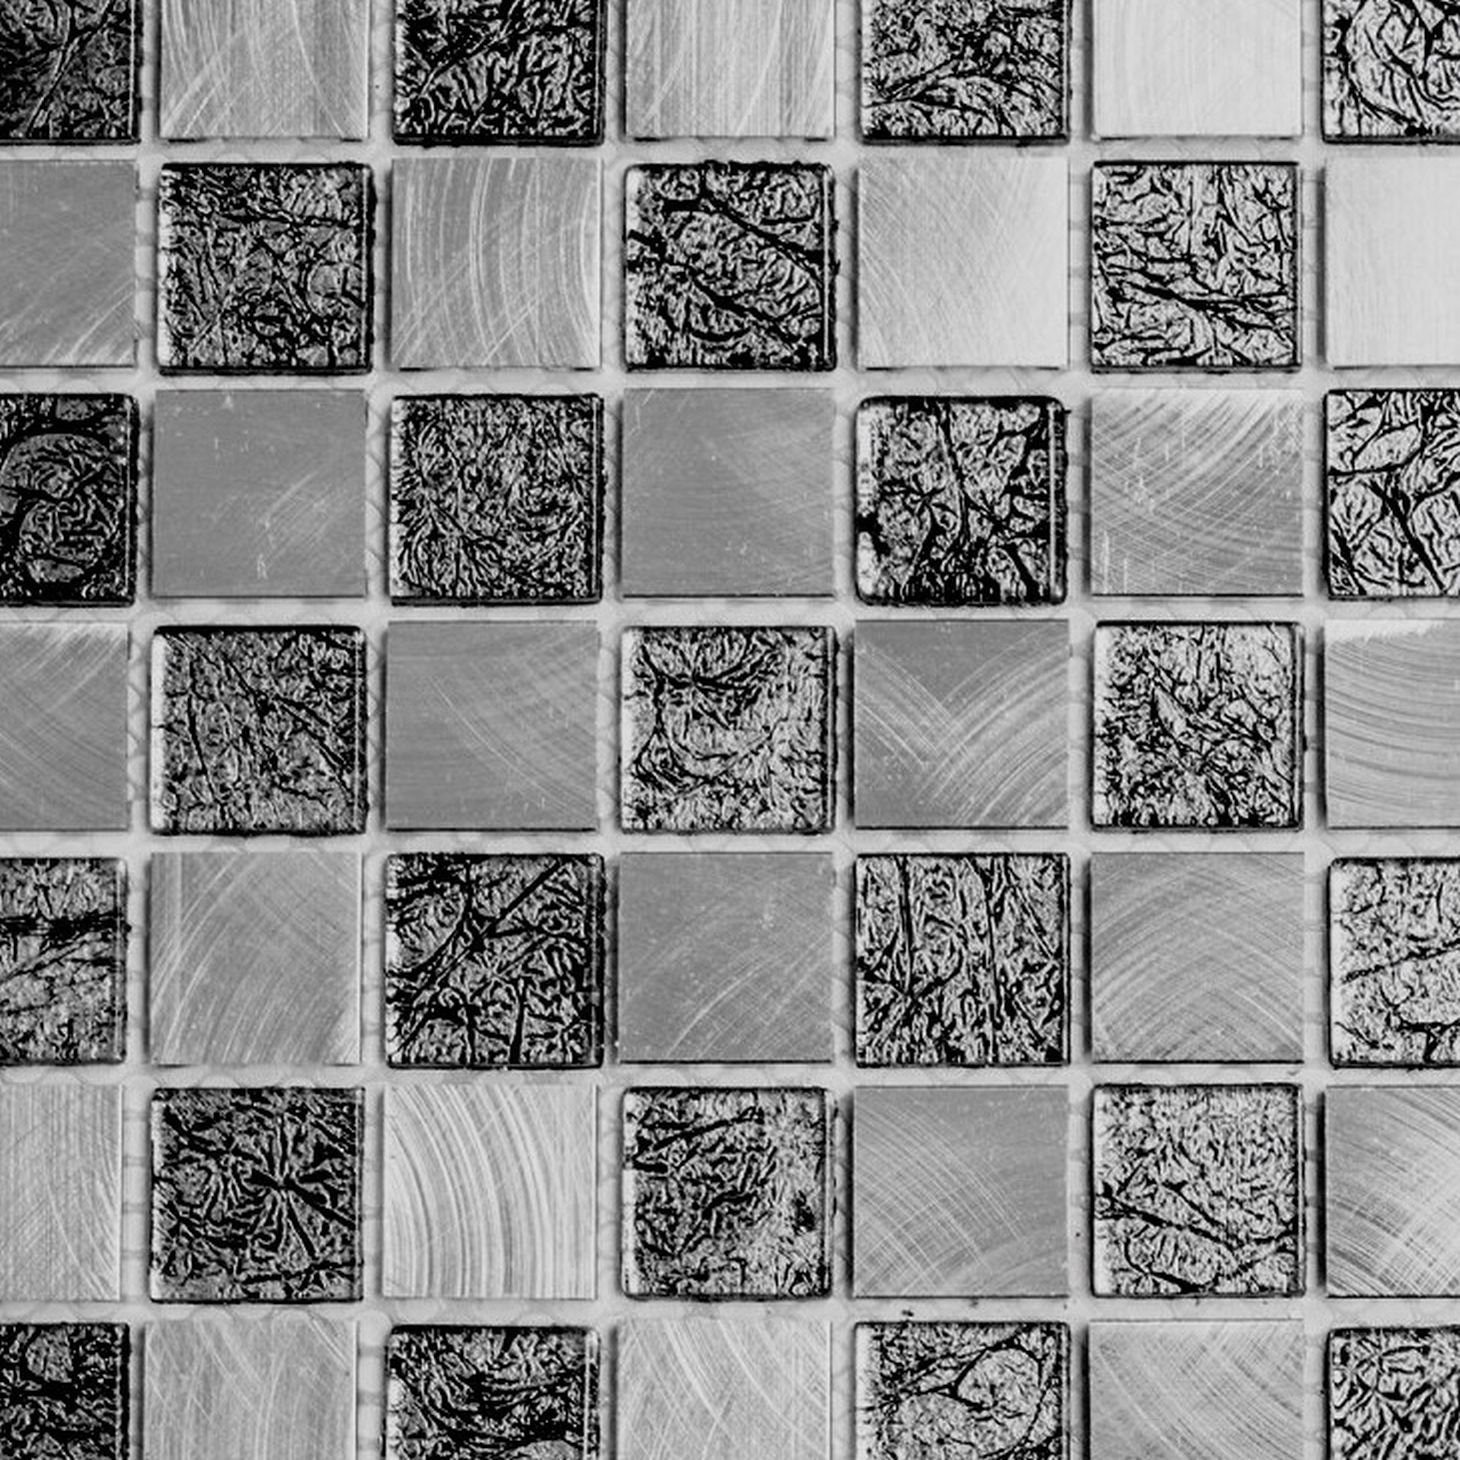 Mosani Mosaikfliesen Mosaik Fliese Alum Glasmosaik schachbrett schwarz anthrazit silber